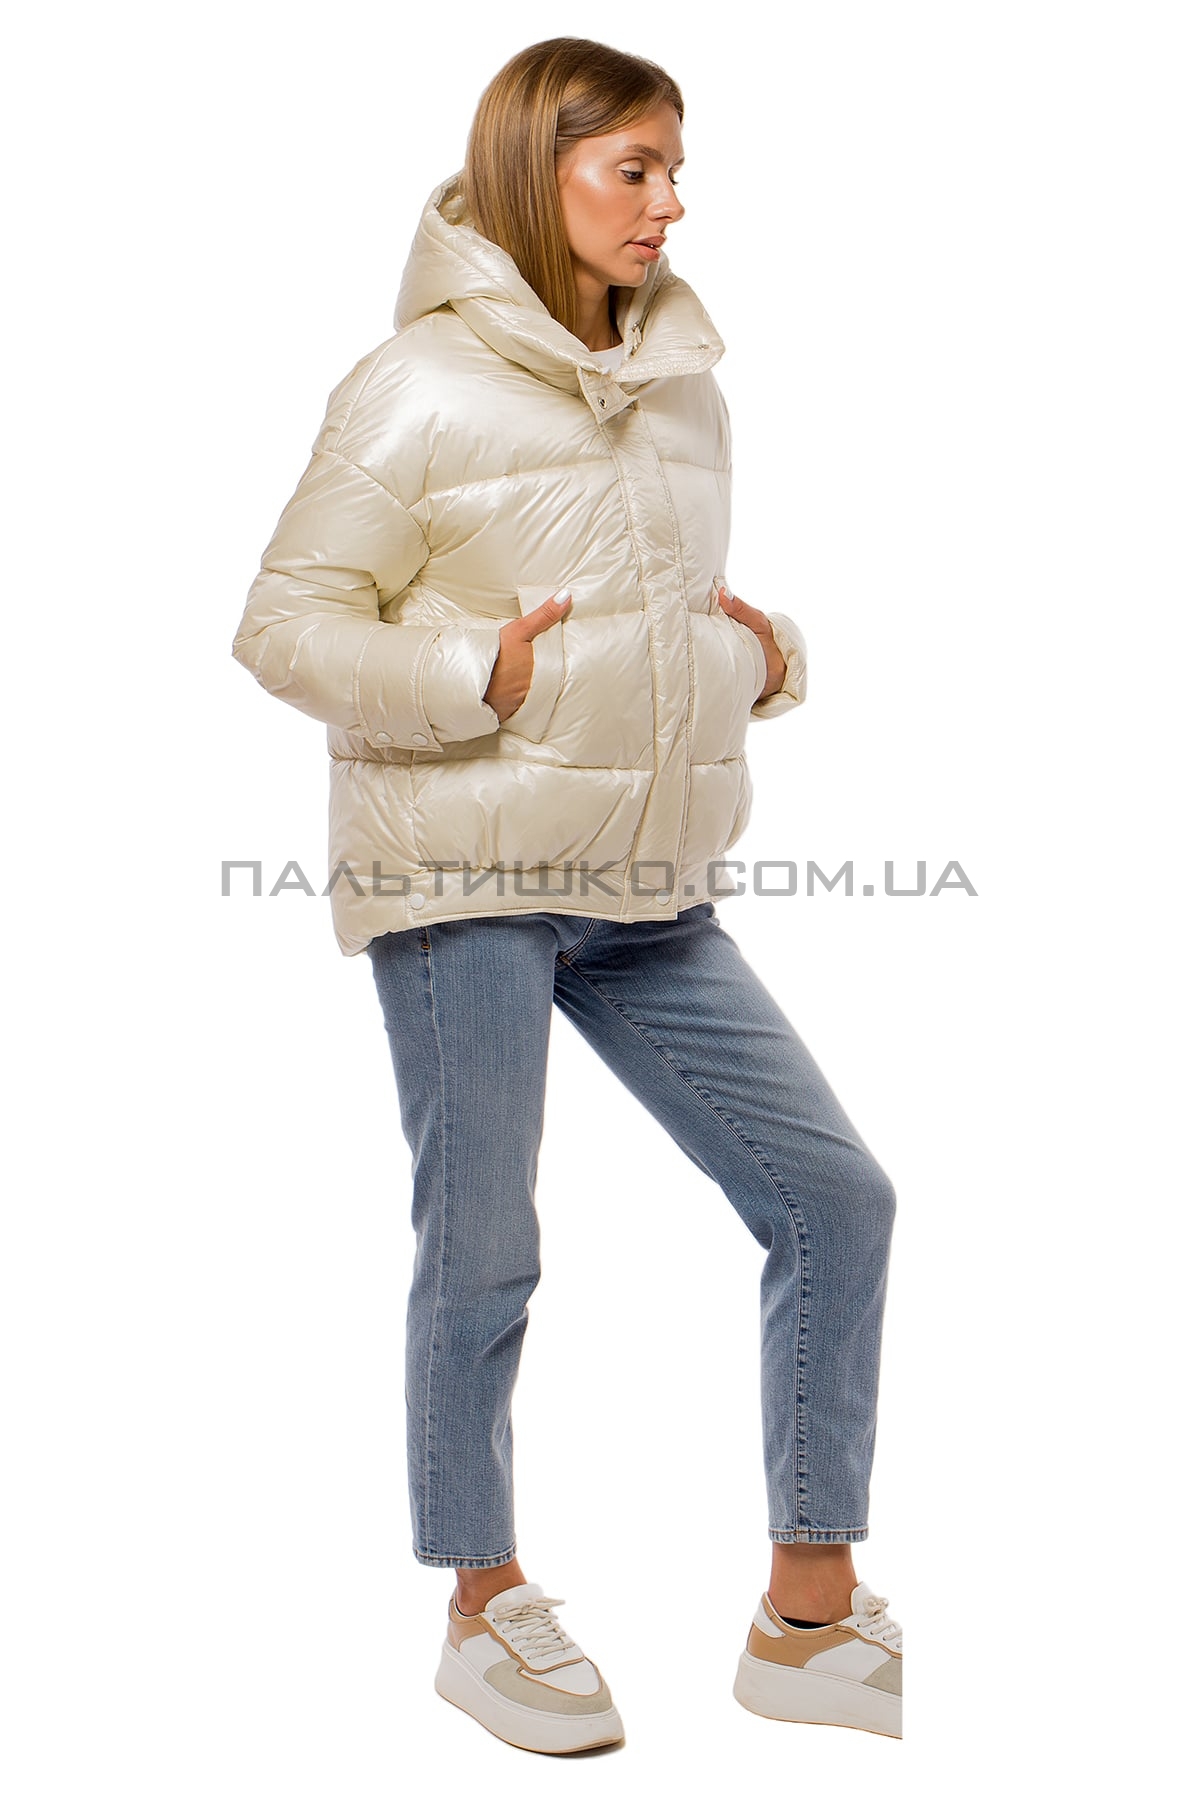  Женкская короткая куртка перламутровая белая